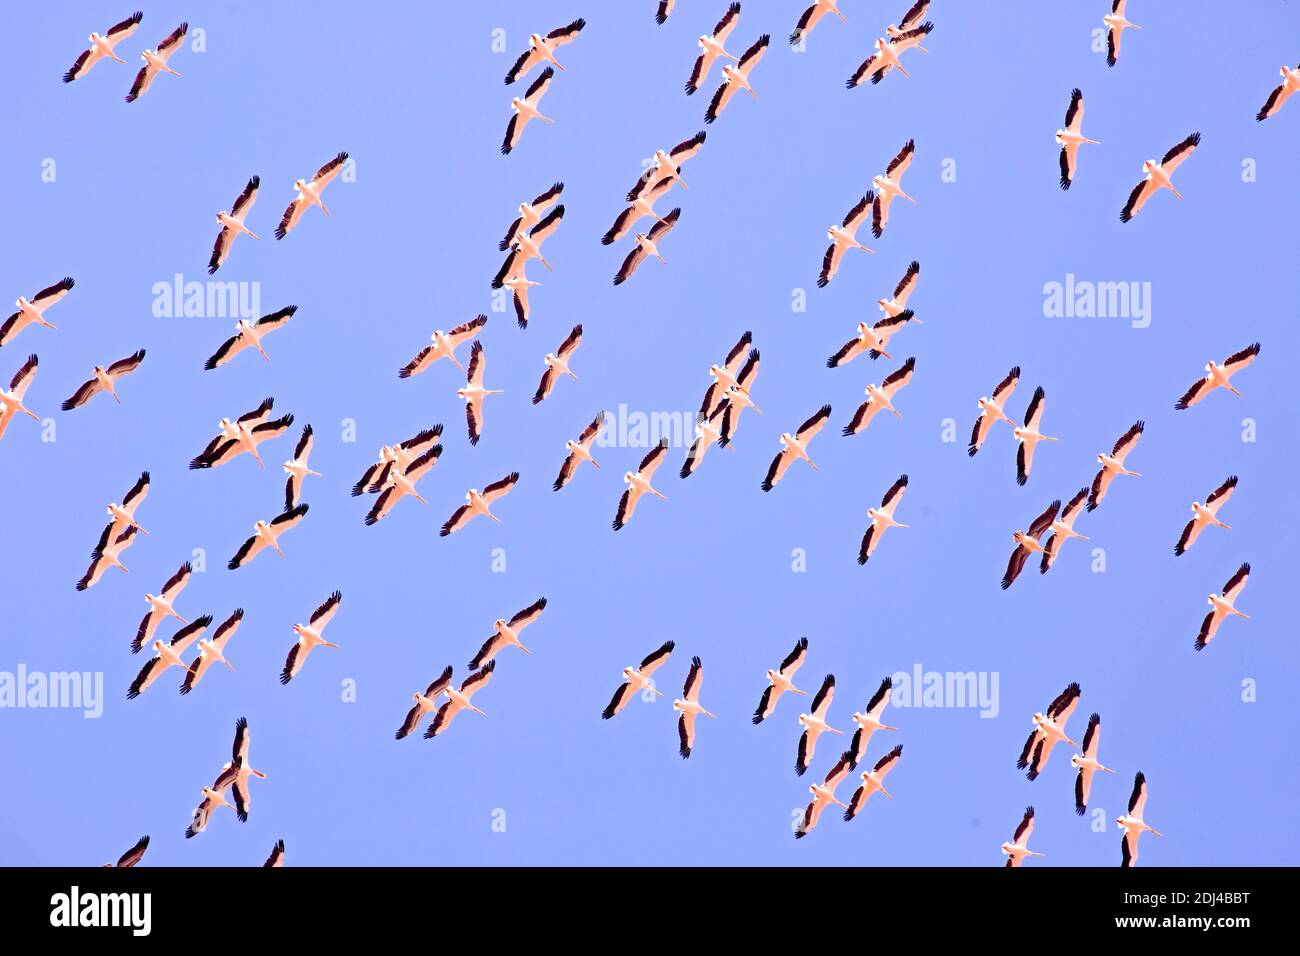 Un grand troupeau de pélicans en vol sur fond bleu ciel. Ces oiseaux sont nocifs pour les pêches locales. Photographié dans la réserve naturelle d'Ein Afek, Banque D'Images